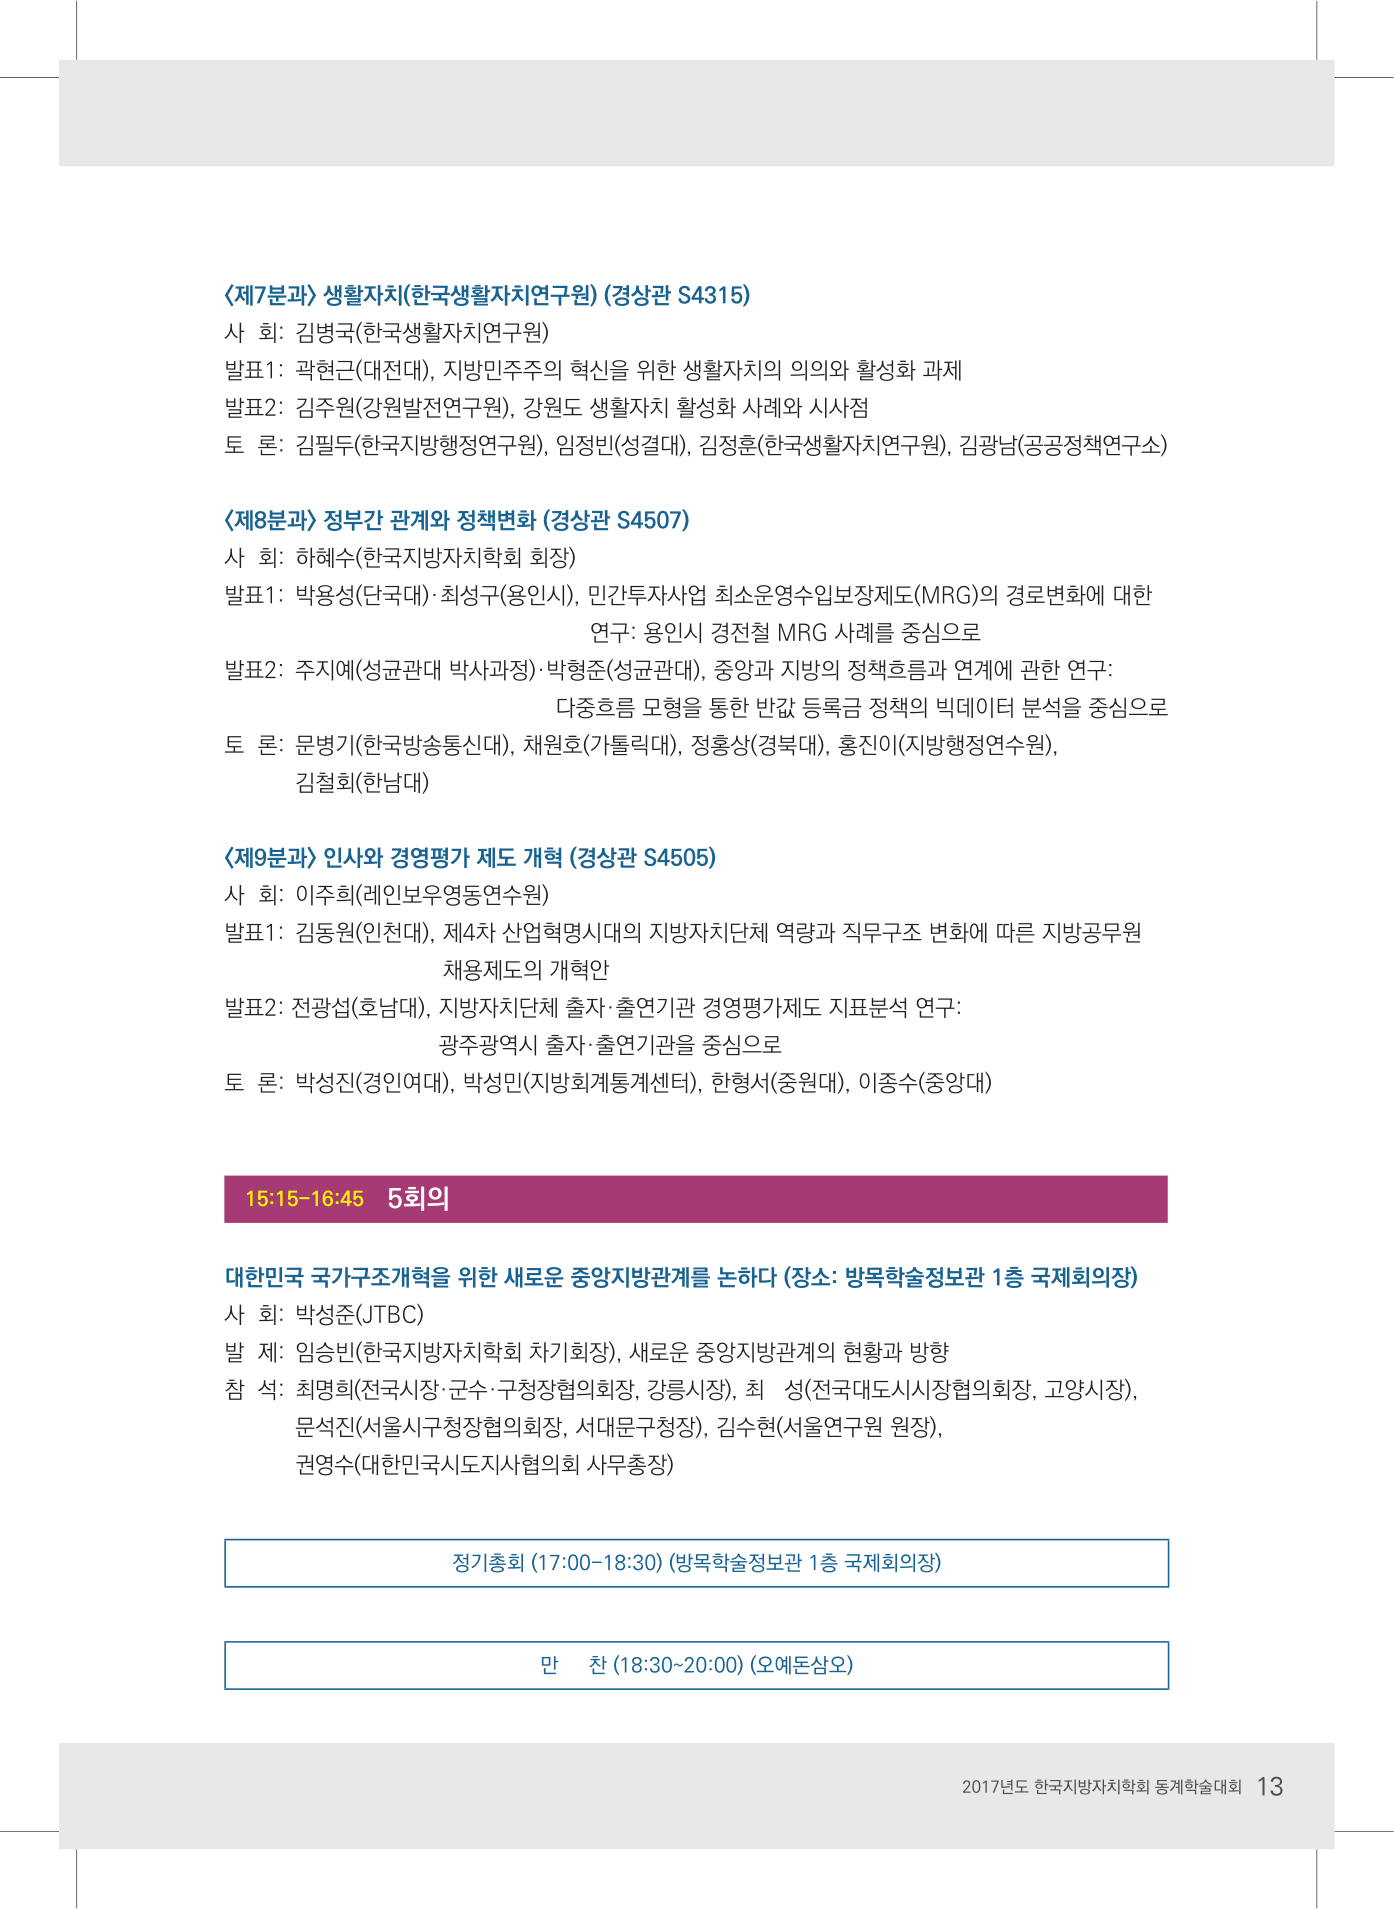 2017 한국지방자치학회 동계학술대회 초청장-13.jpg